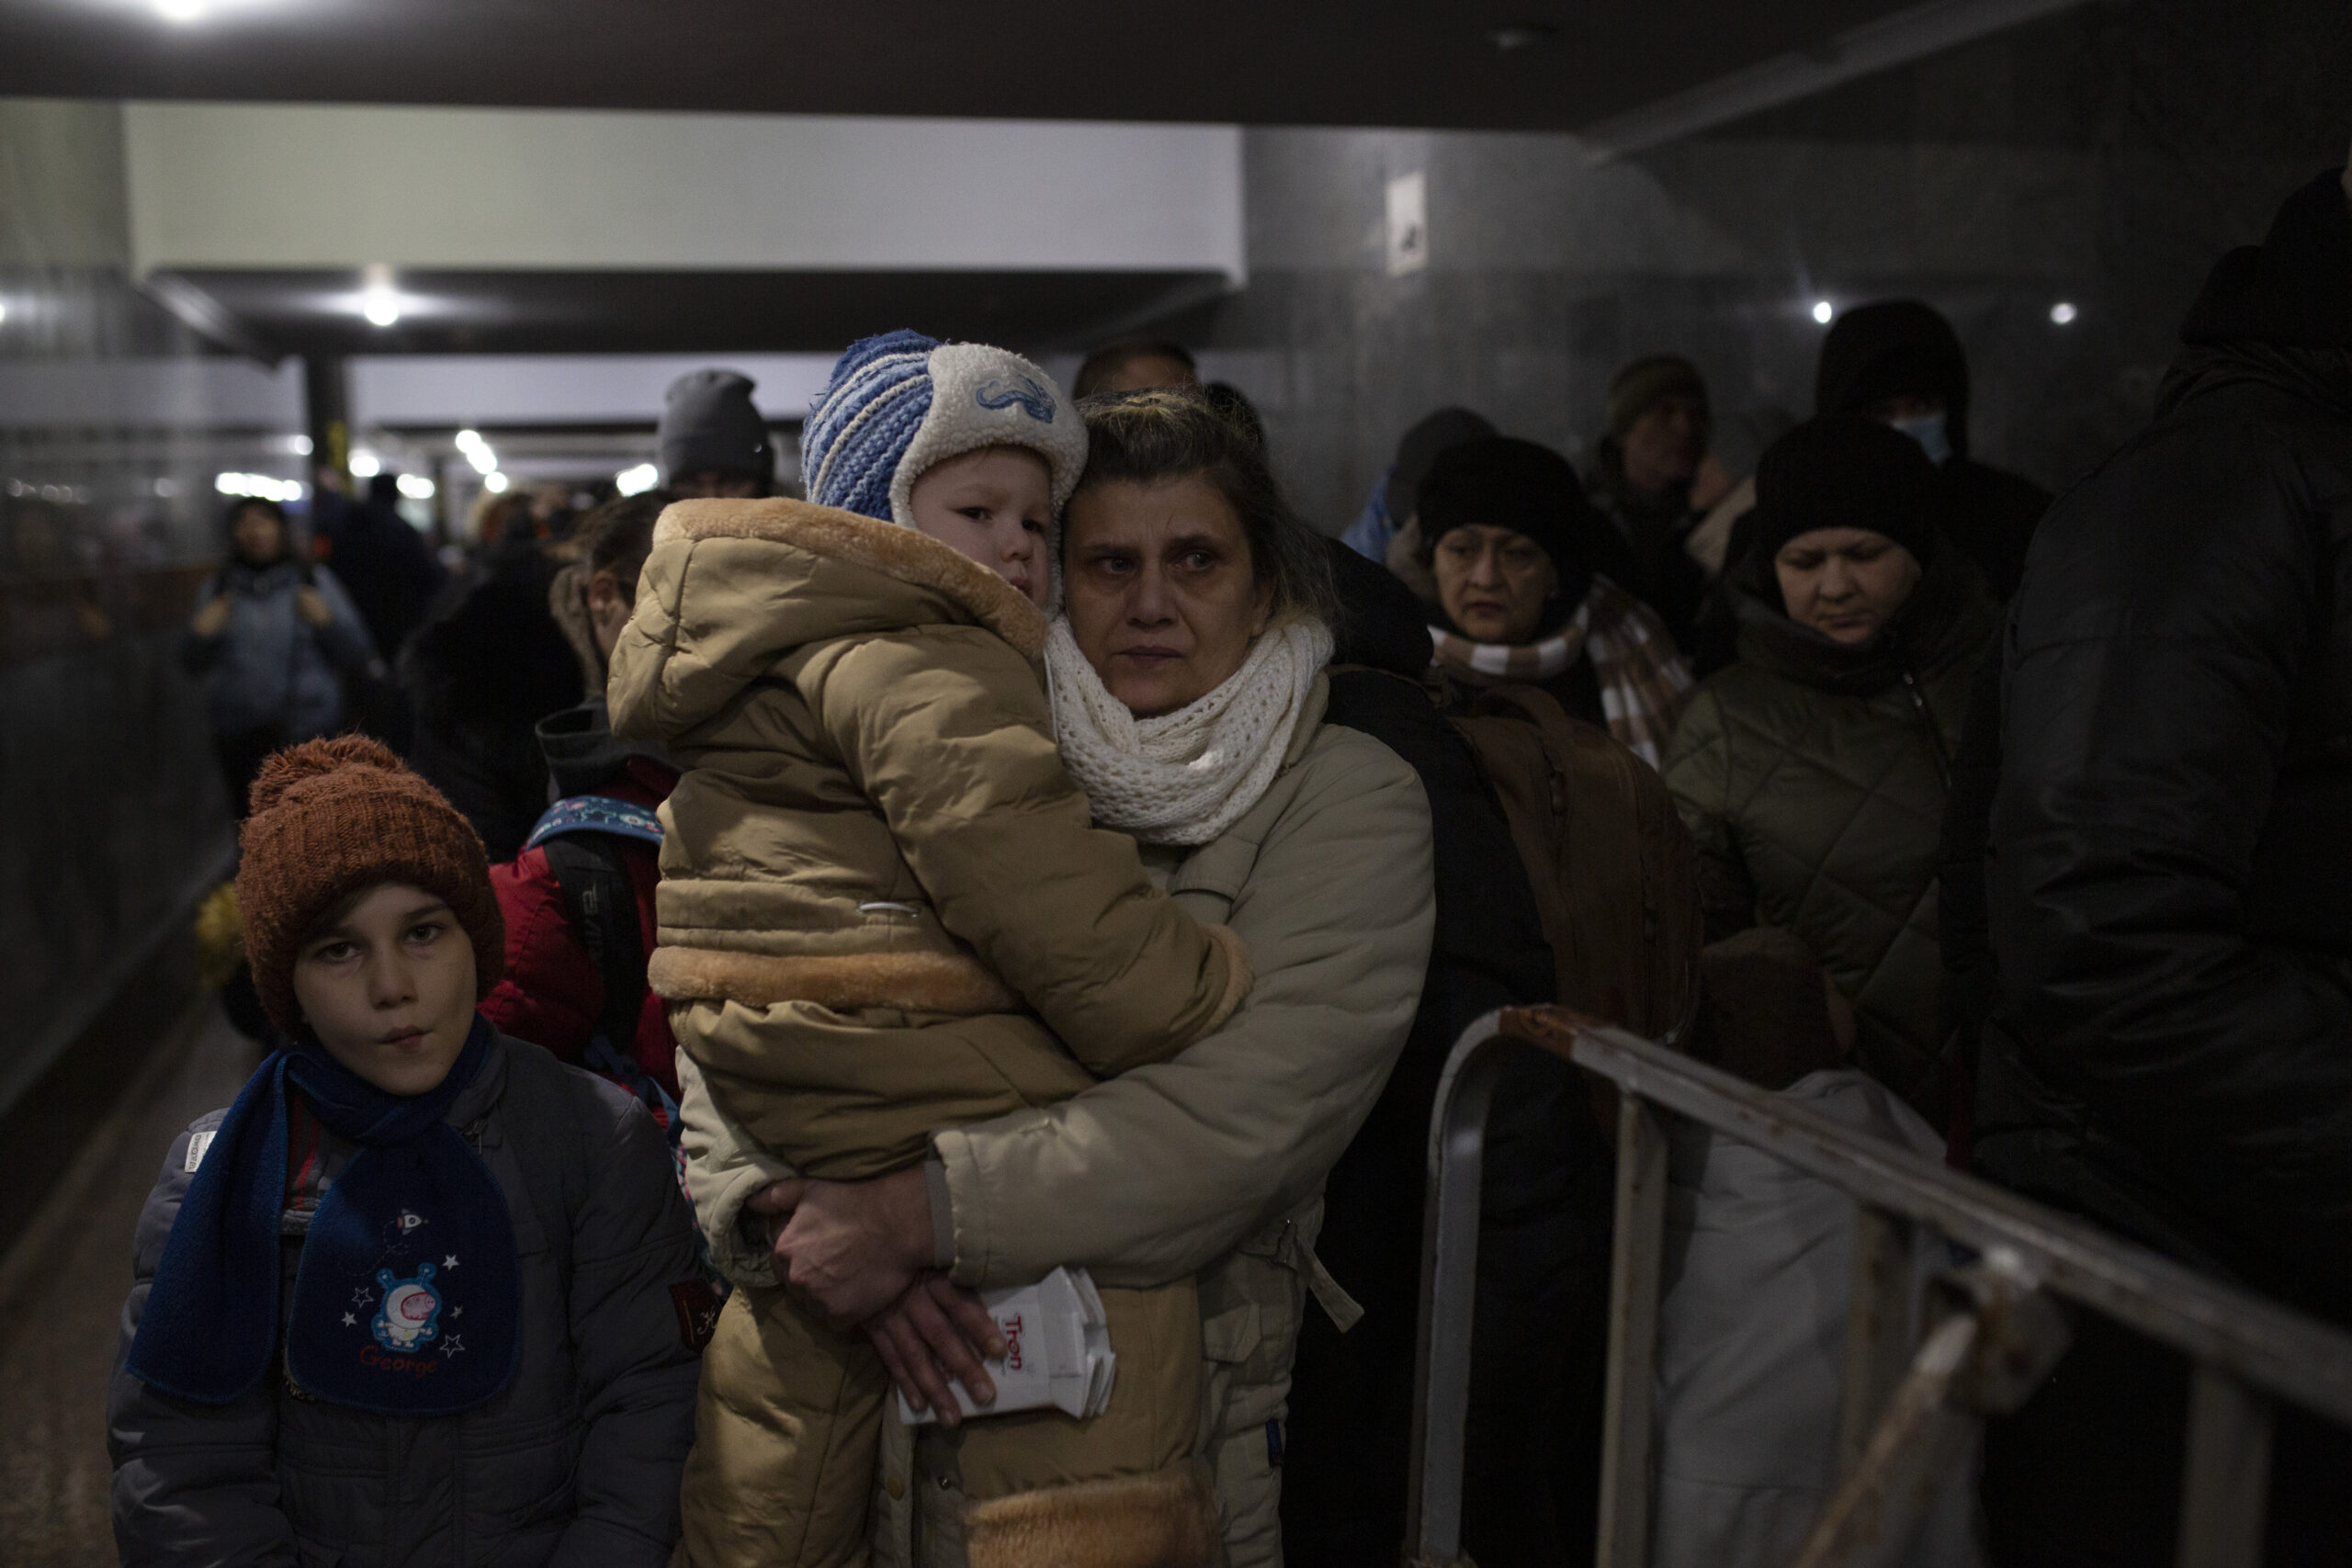 Eind februari en begin maart moesten duizenden mensen halsoverkop Oekraïne ontvluchten. Hier wachten mensen in een station op treinen richting Polen. © UNHCR / Valerio Muscella